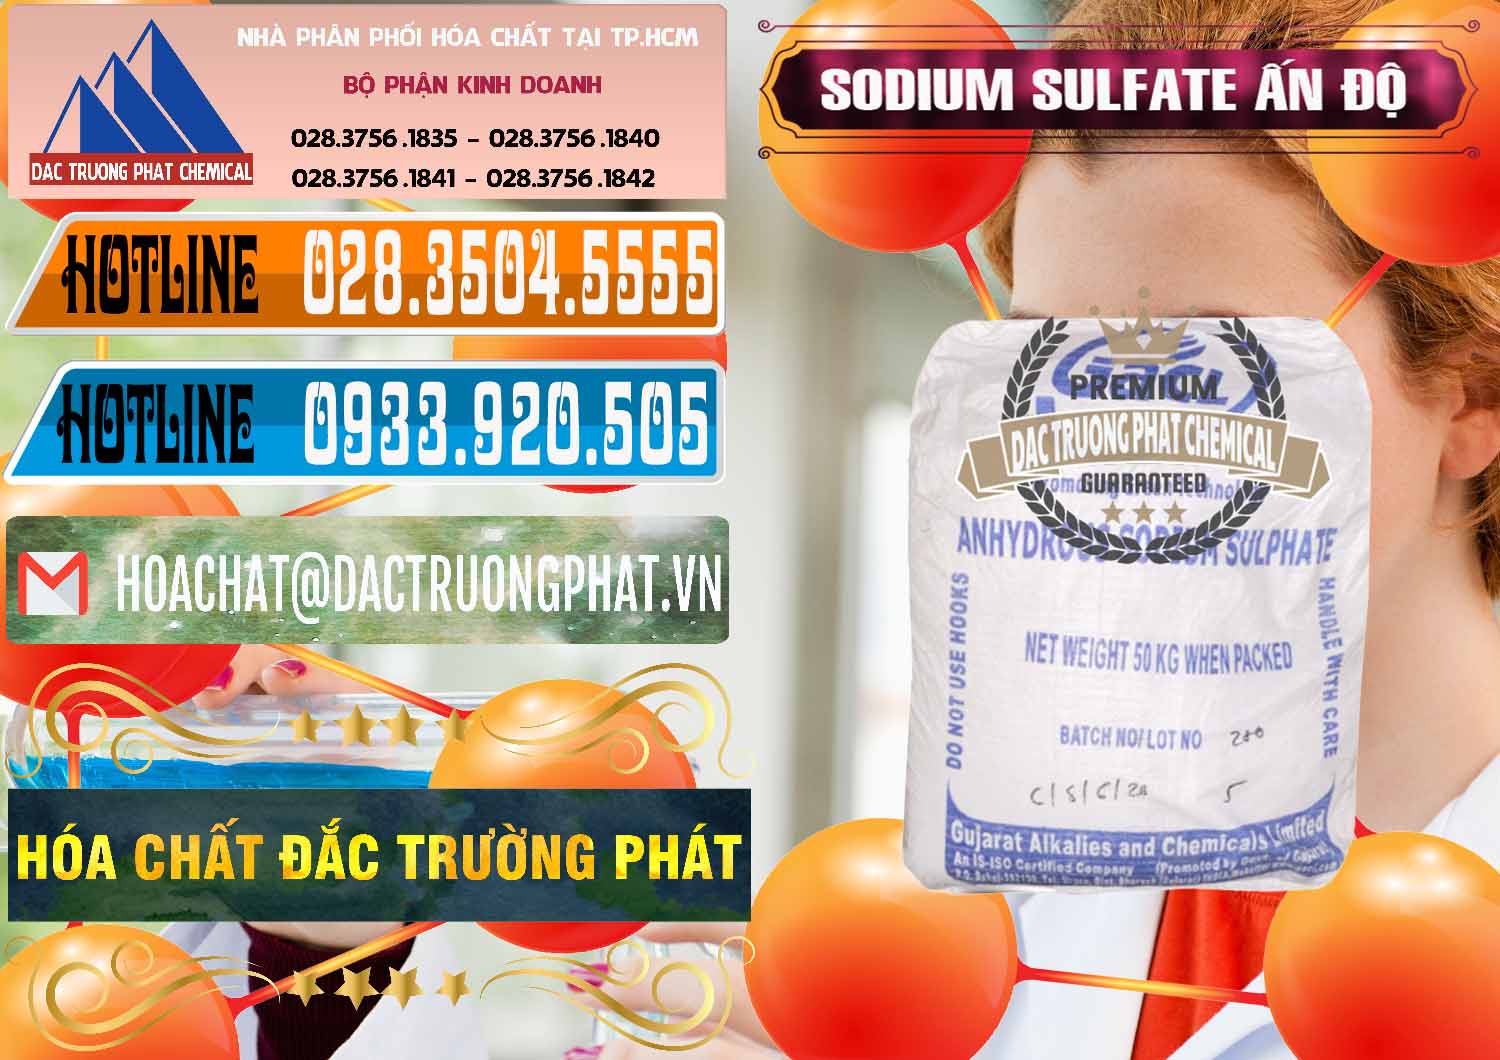 Công ty chuyên cung ứng & bán Sodium Sulphate - Muối Sunfat Na2SO4 GACL Ấn Độ India - 0461 - Nơi chuyên cung cấp & nhập khẩu hóa chất tại TP.HCM - stmp.net